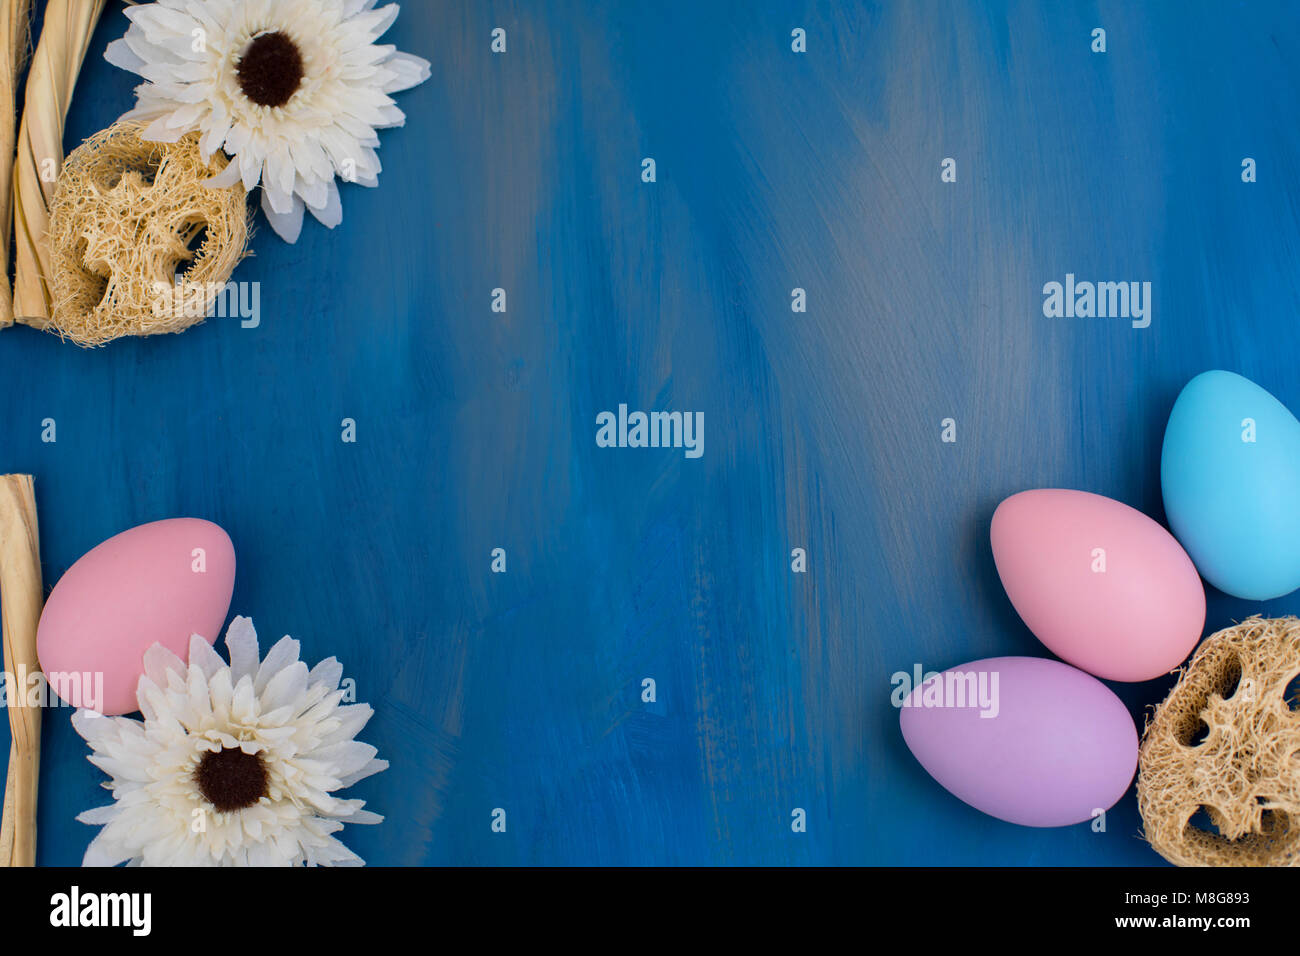 Belle composition de Pâques : les oeufs teints de couleur sur un fond bleu foncé. Copie de l'espace pour un message. Banque D'Images